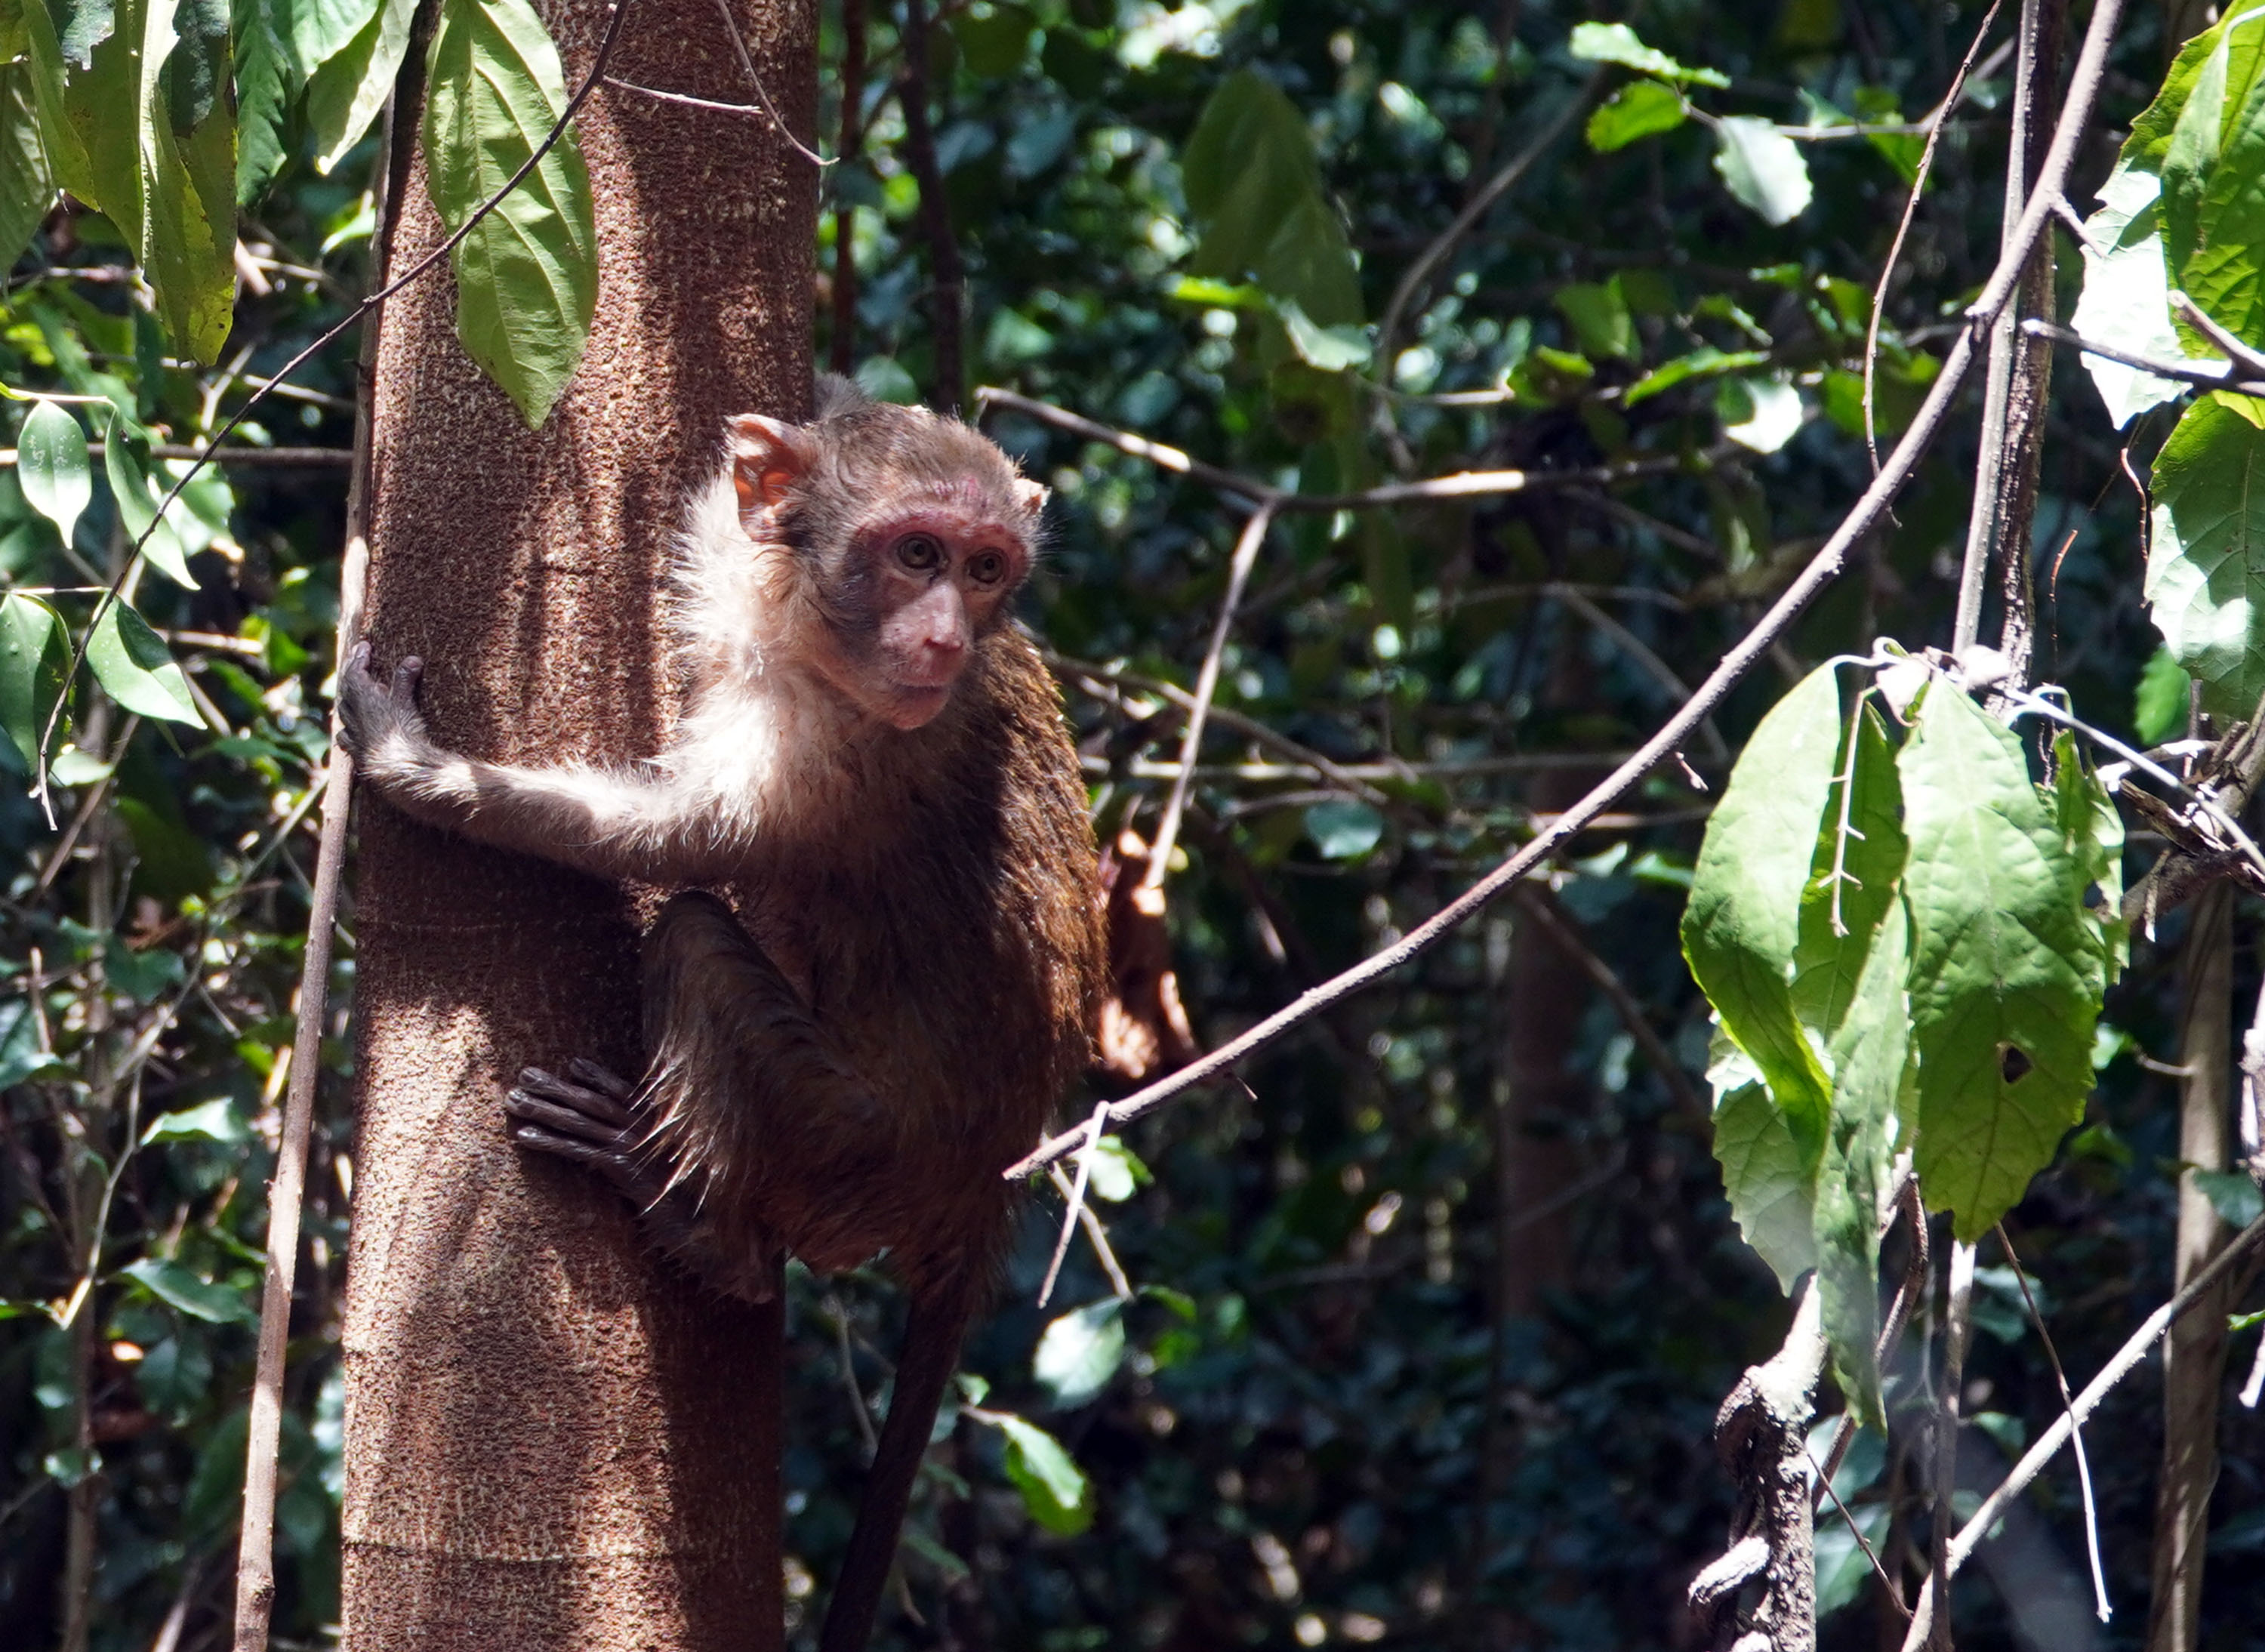  Niềm vui của chú khỉ con khi trở về ngôi nhà thiên nhiên và ánh nhìn lưu luyến gửi theo nhân viên cứu hộ.